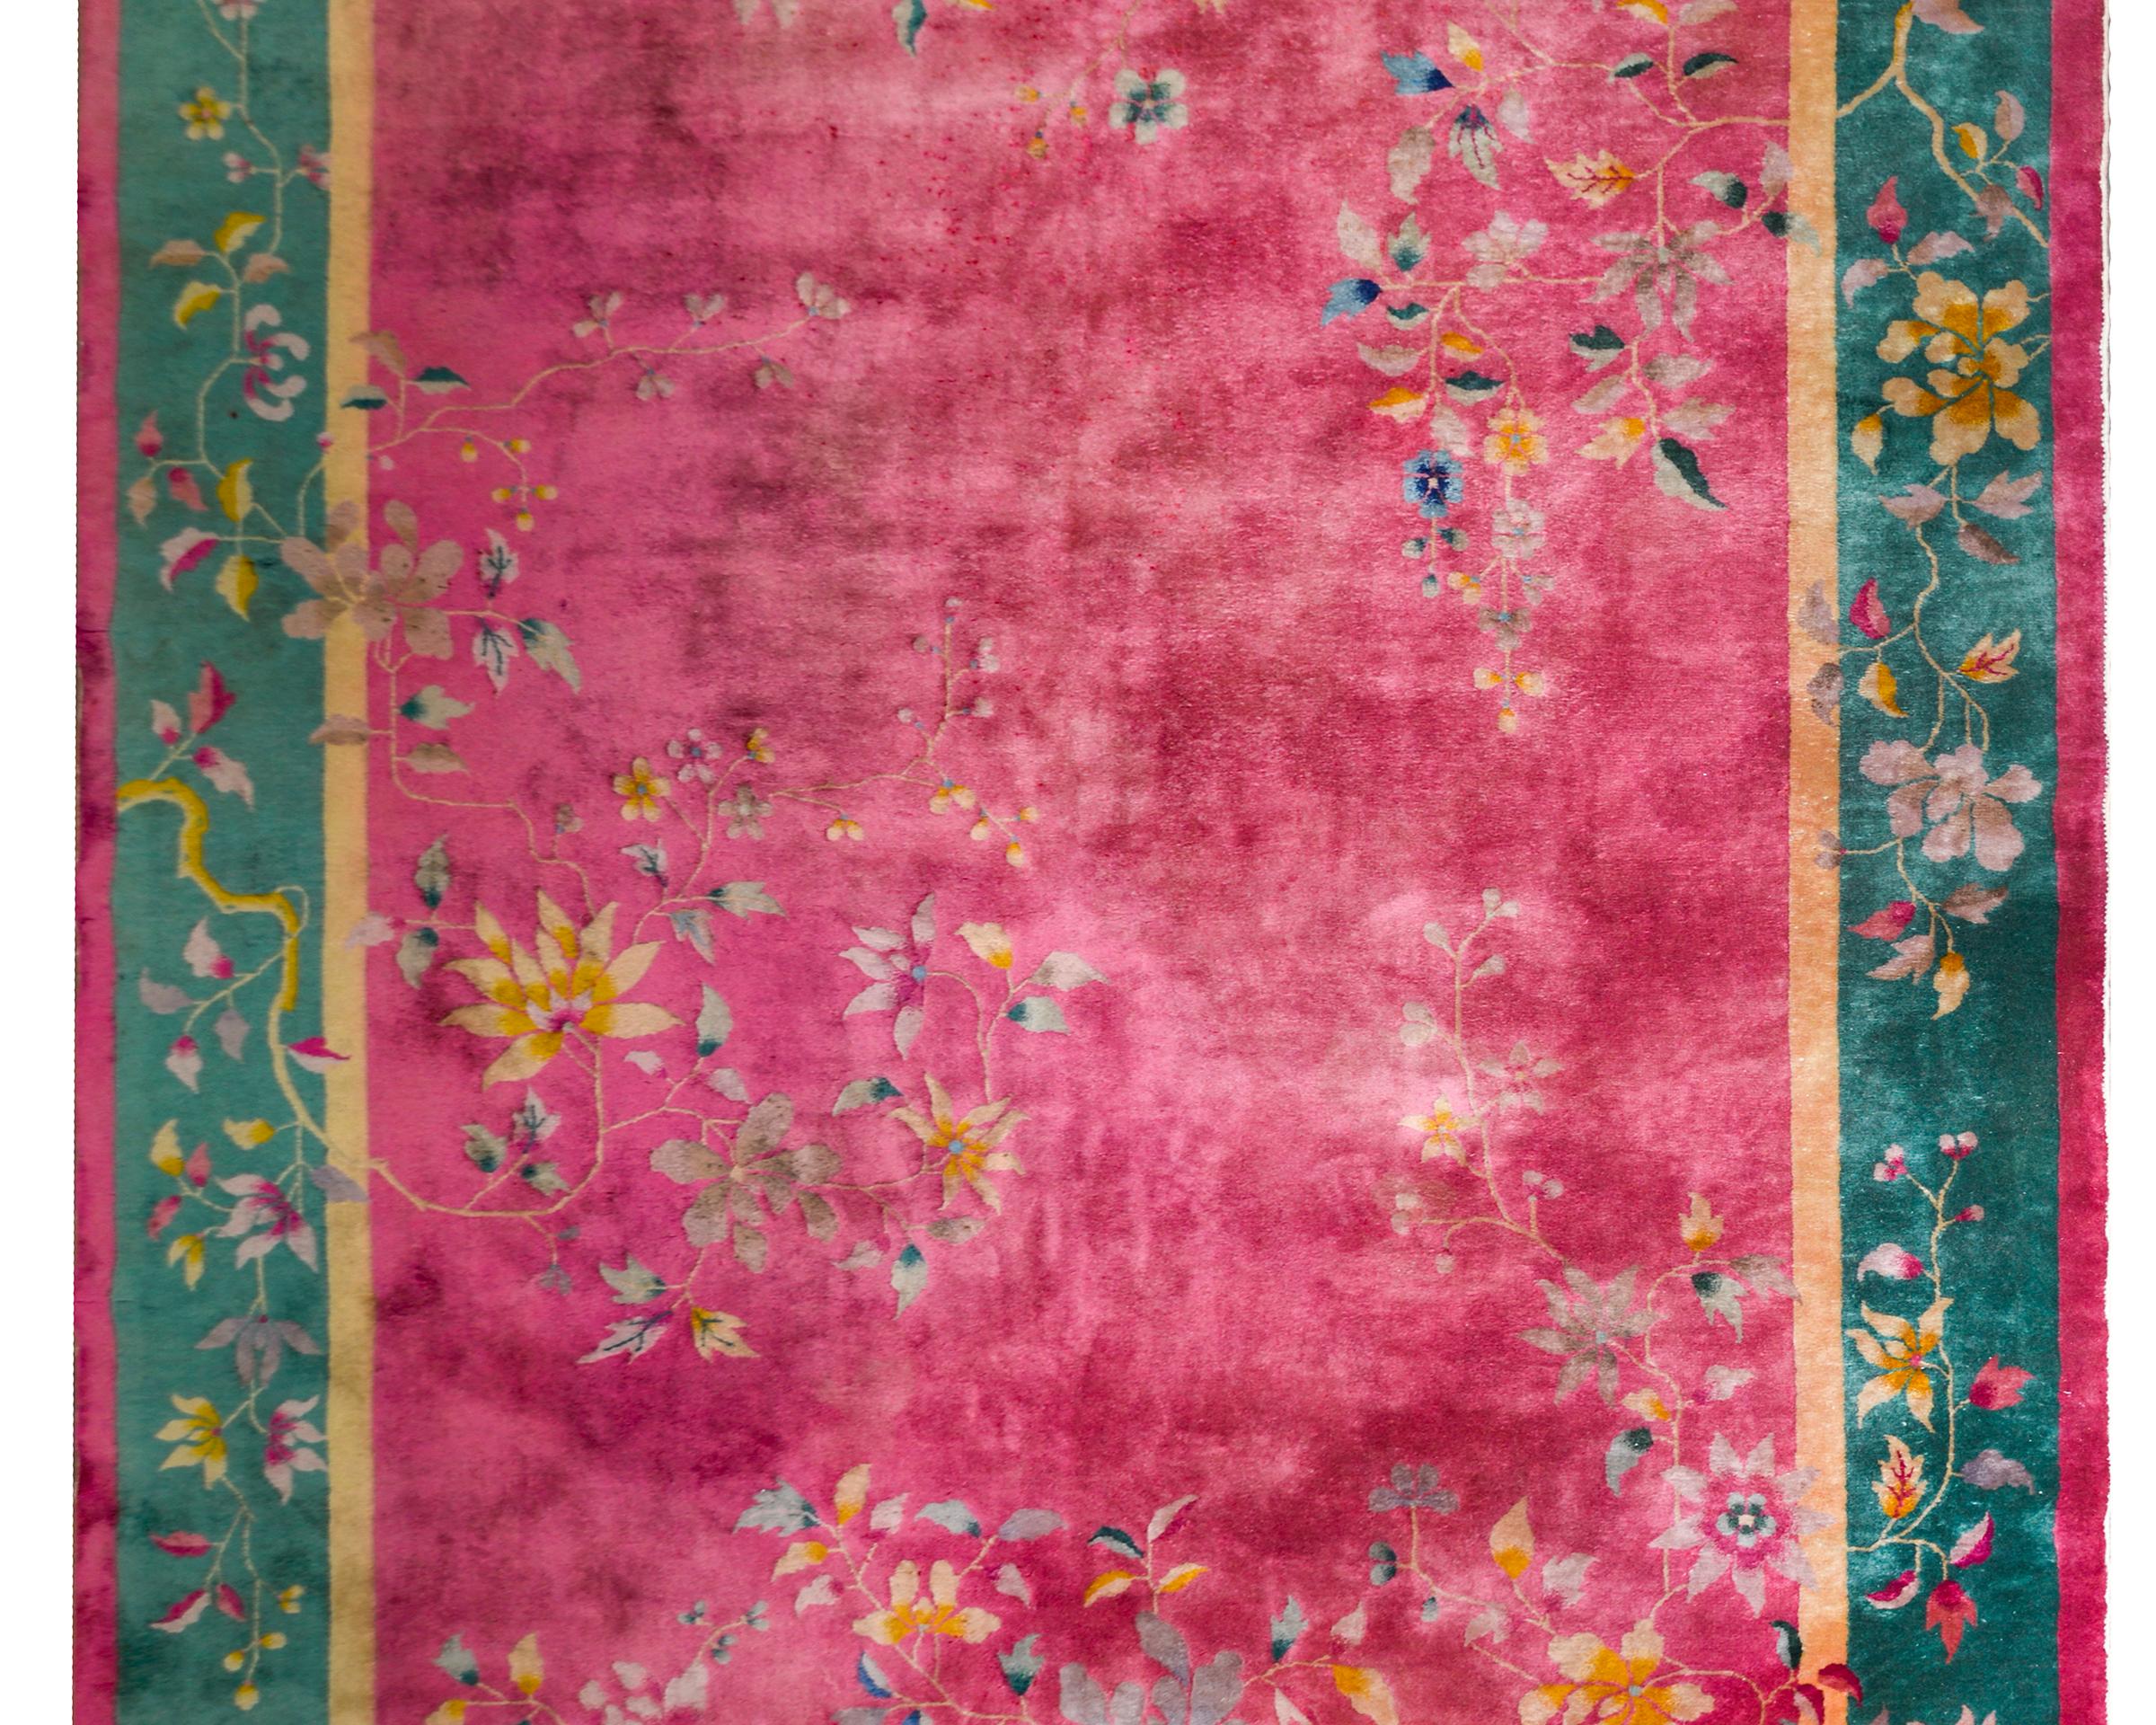 Chinesischer Art-Déco-Teppich aus dem frühen 20. Jahrhundert mit einem leuchtenden fuchsiafarbenen Feld, umgeben von einer breiten türkisfarbenen Bordüre, flankiert von schmalen goldenen und fuchsiafarbenen Streifen. Die Umrandung besteht aus